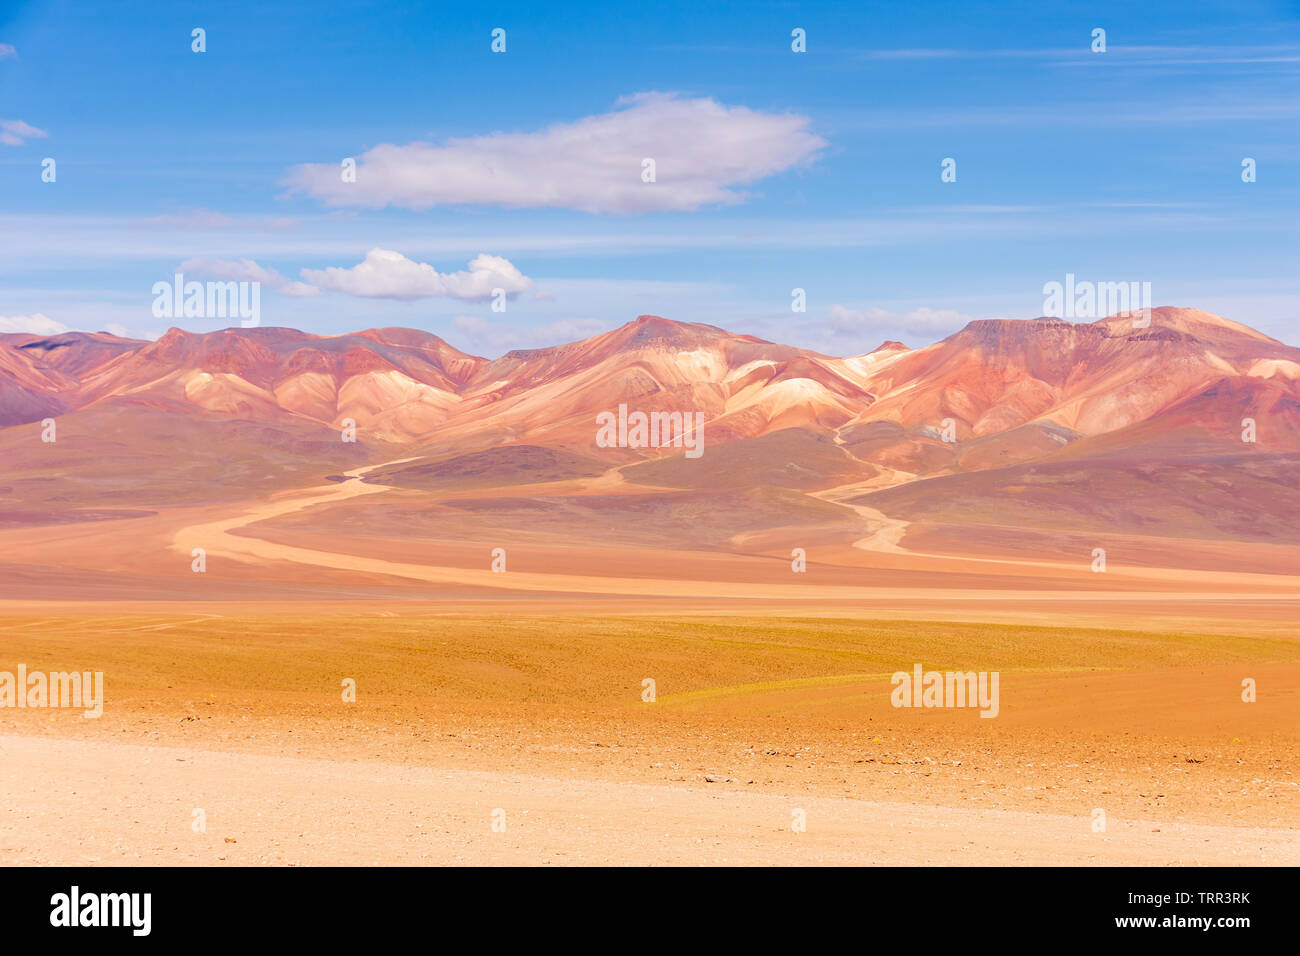 The colourful Andes mountain range in the Salvador Dali Desert (Desierto de Salvador Dali) in the Altiplano region of Bolivia. Stock Photo